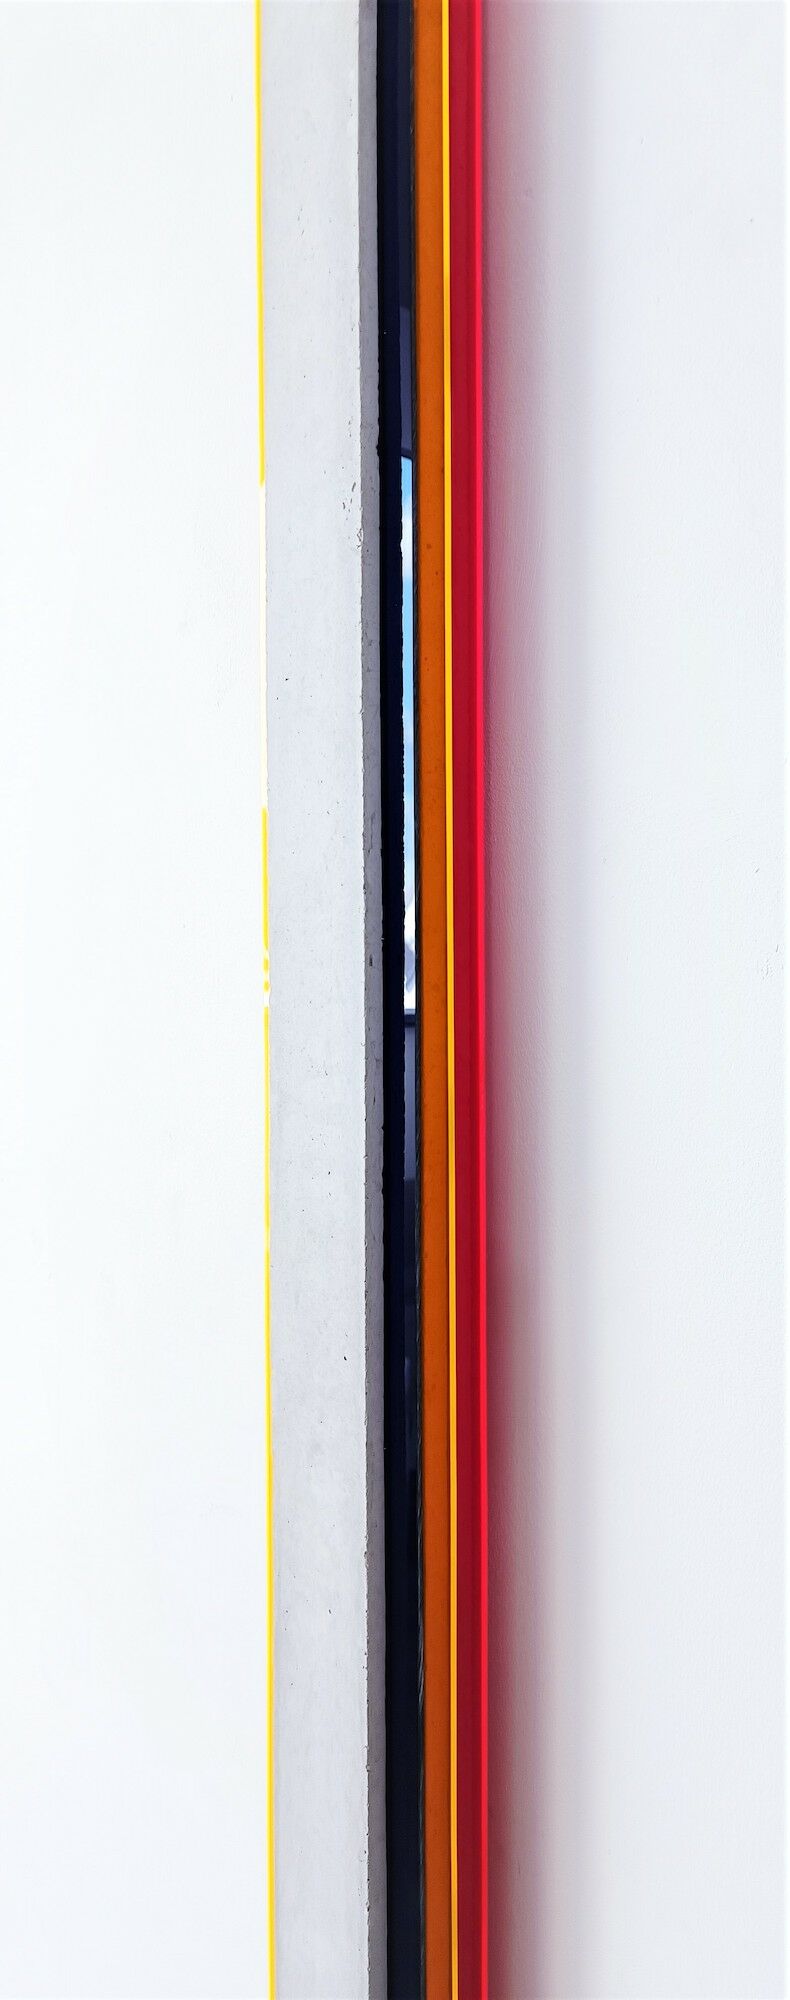 Object "Stele VI" (2021) (Unique piece) by Selcuk Dizlek